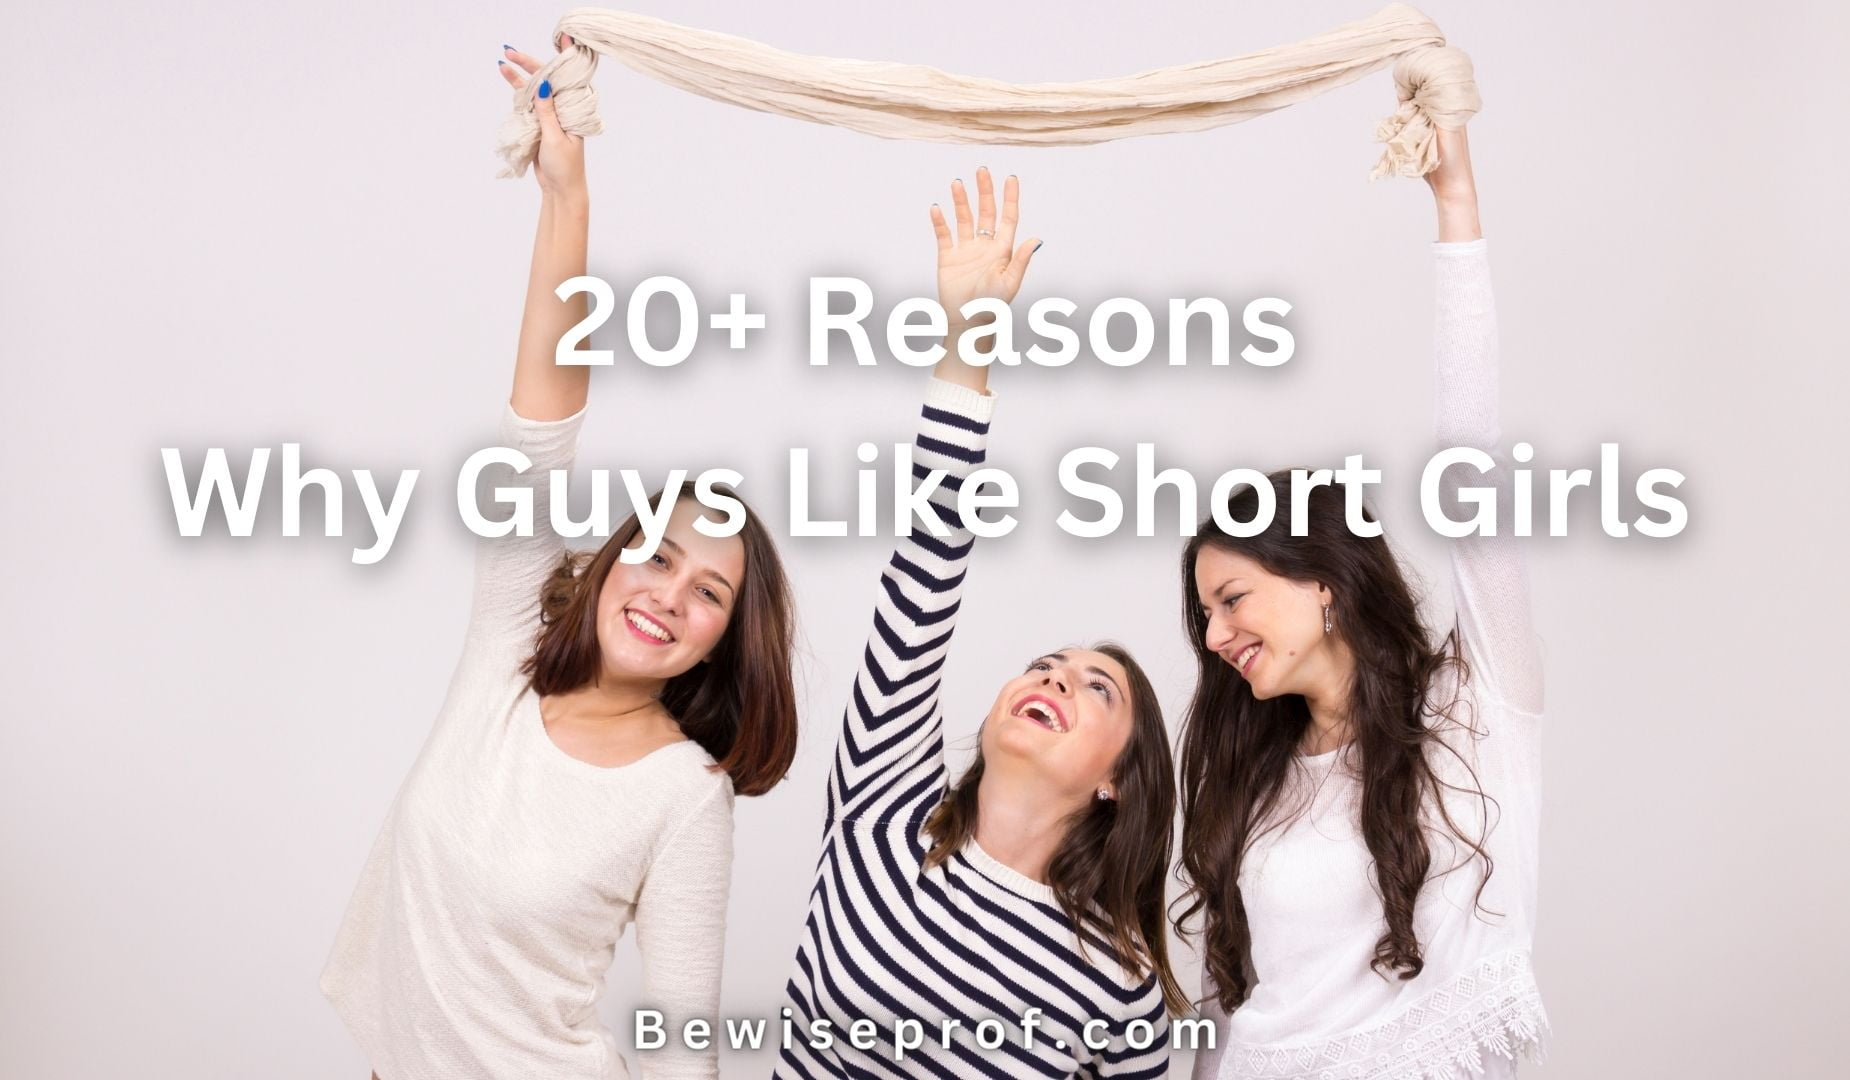 20+ Reasons Why Guys Like Short Girls